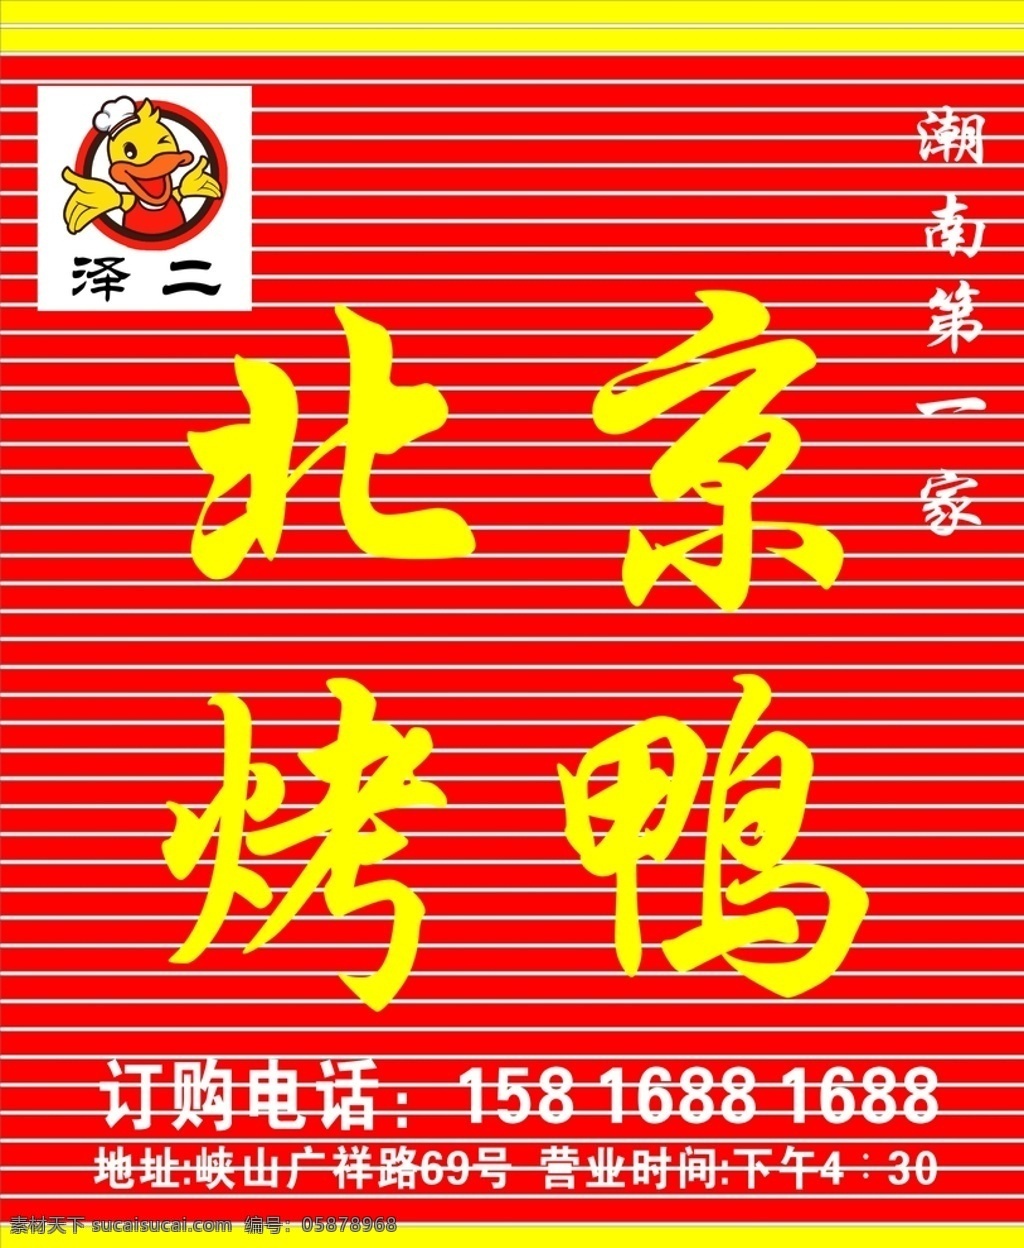 北京烤鸭鸭 烤鸭 北京最出名鸭 鸭头 鸭子 文化艺术